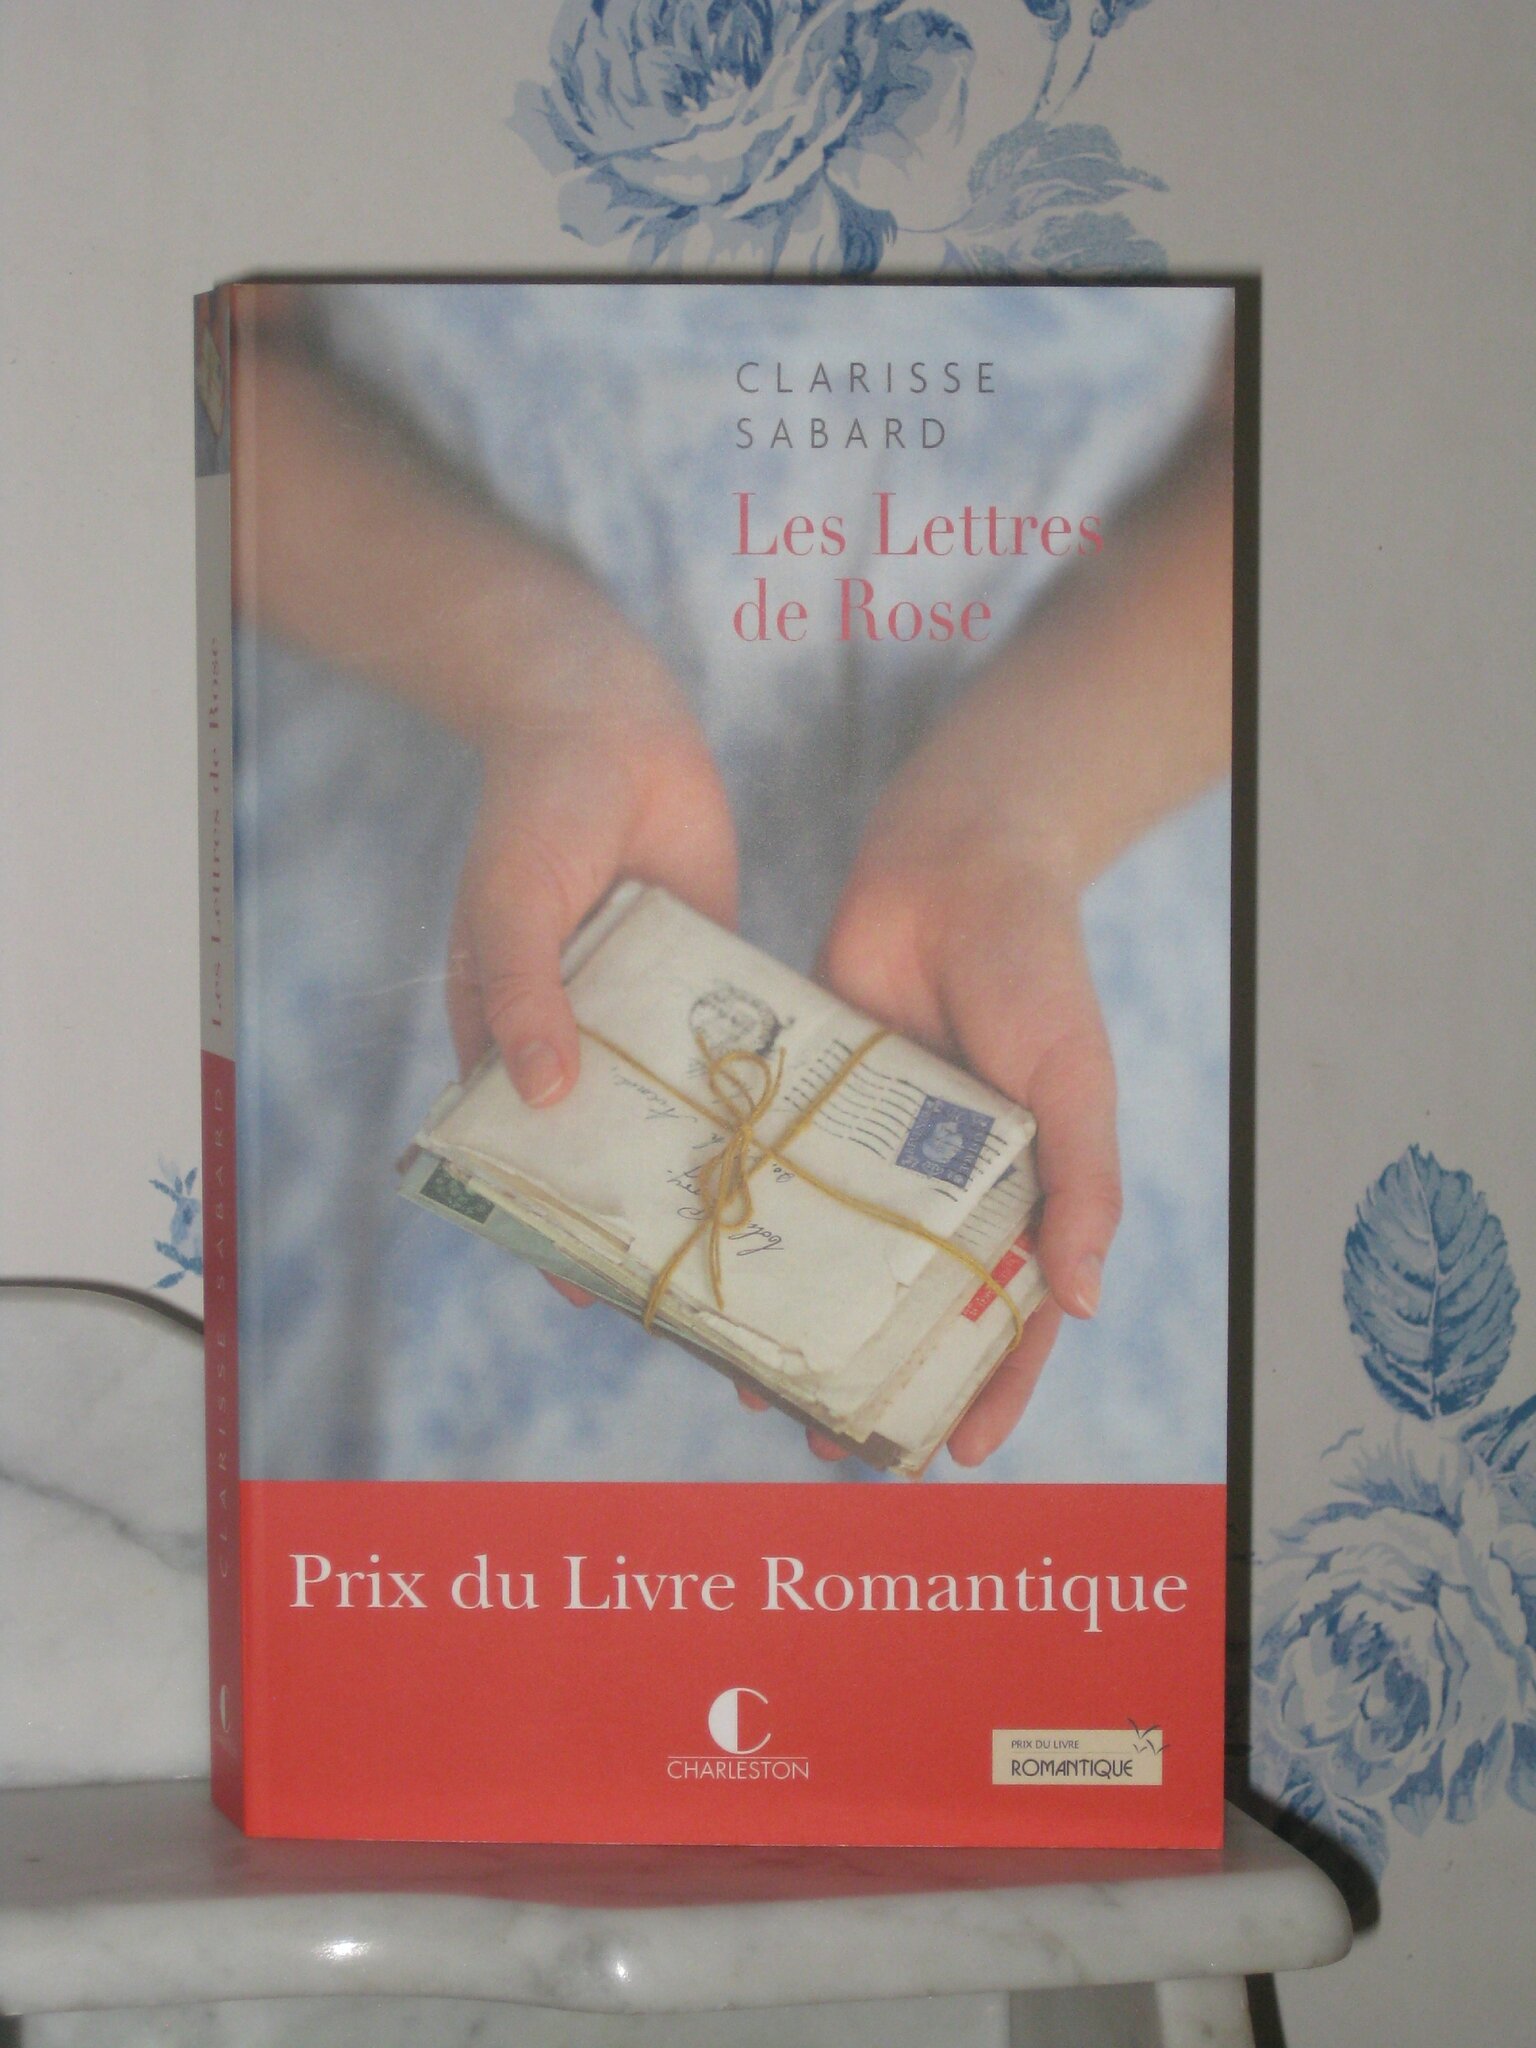 Les Lettres de Rose - Clarisse Sabard - La maison des livres